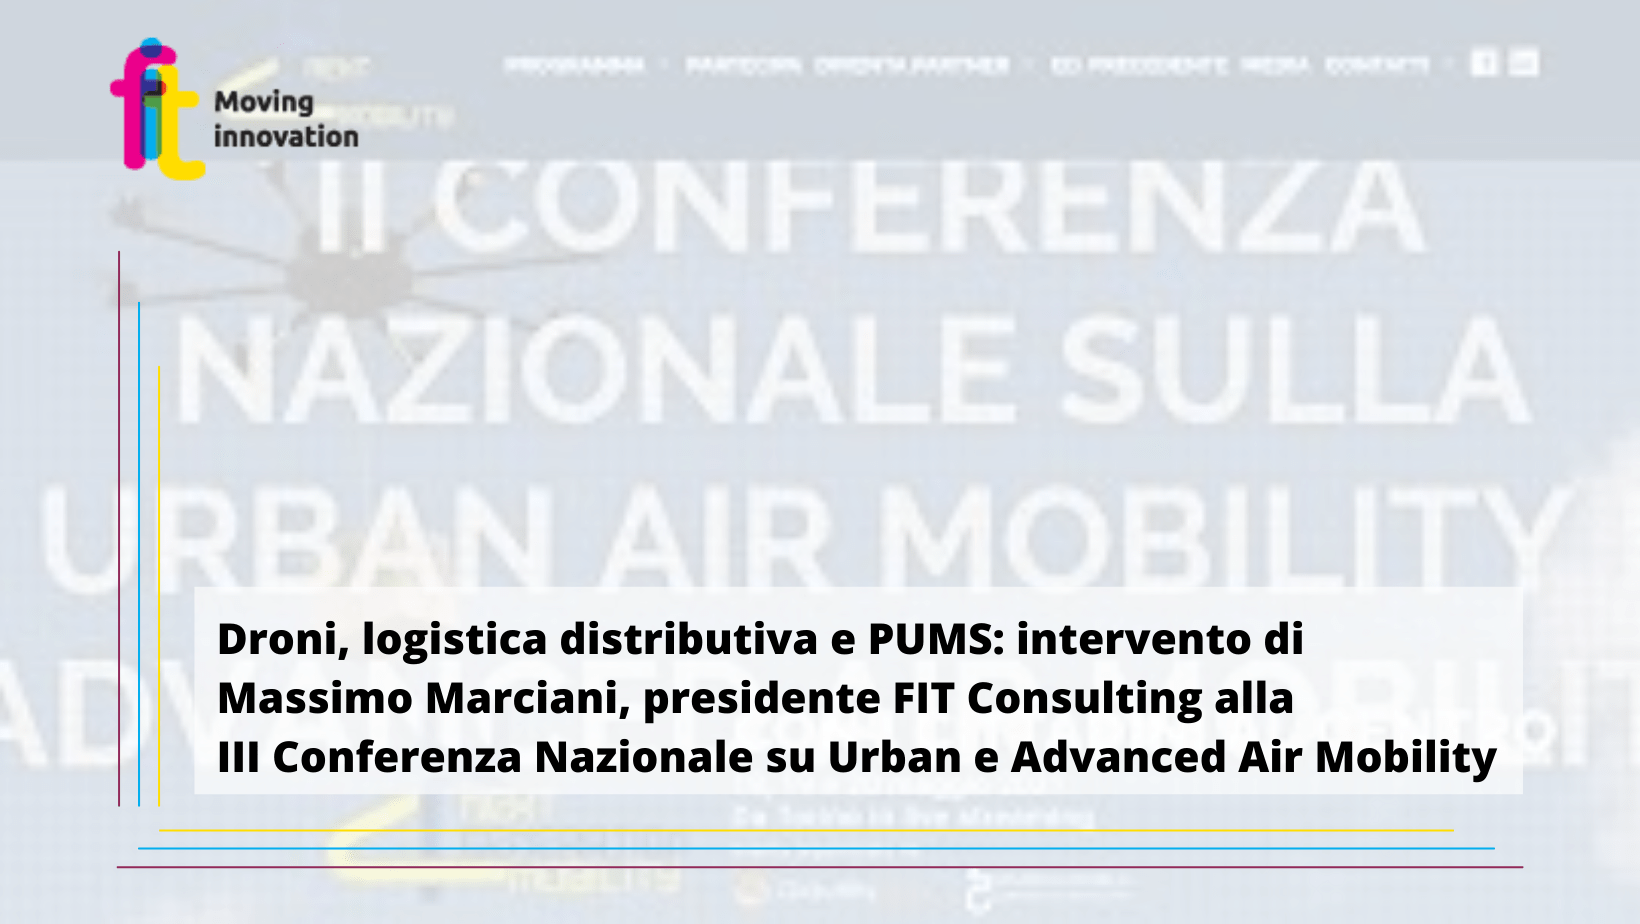 III Conferenza Nazionale su Urban e Advanced Air Mobility: intervento di Massimo Marciani, presidente FIT Consulting